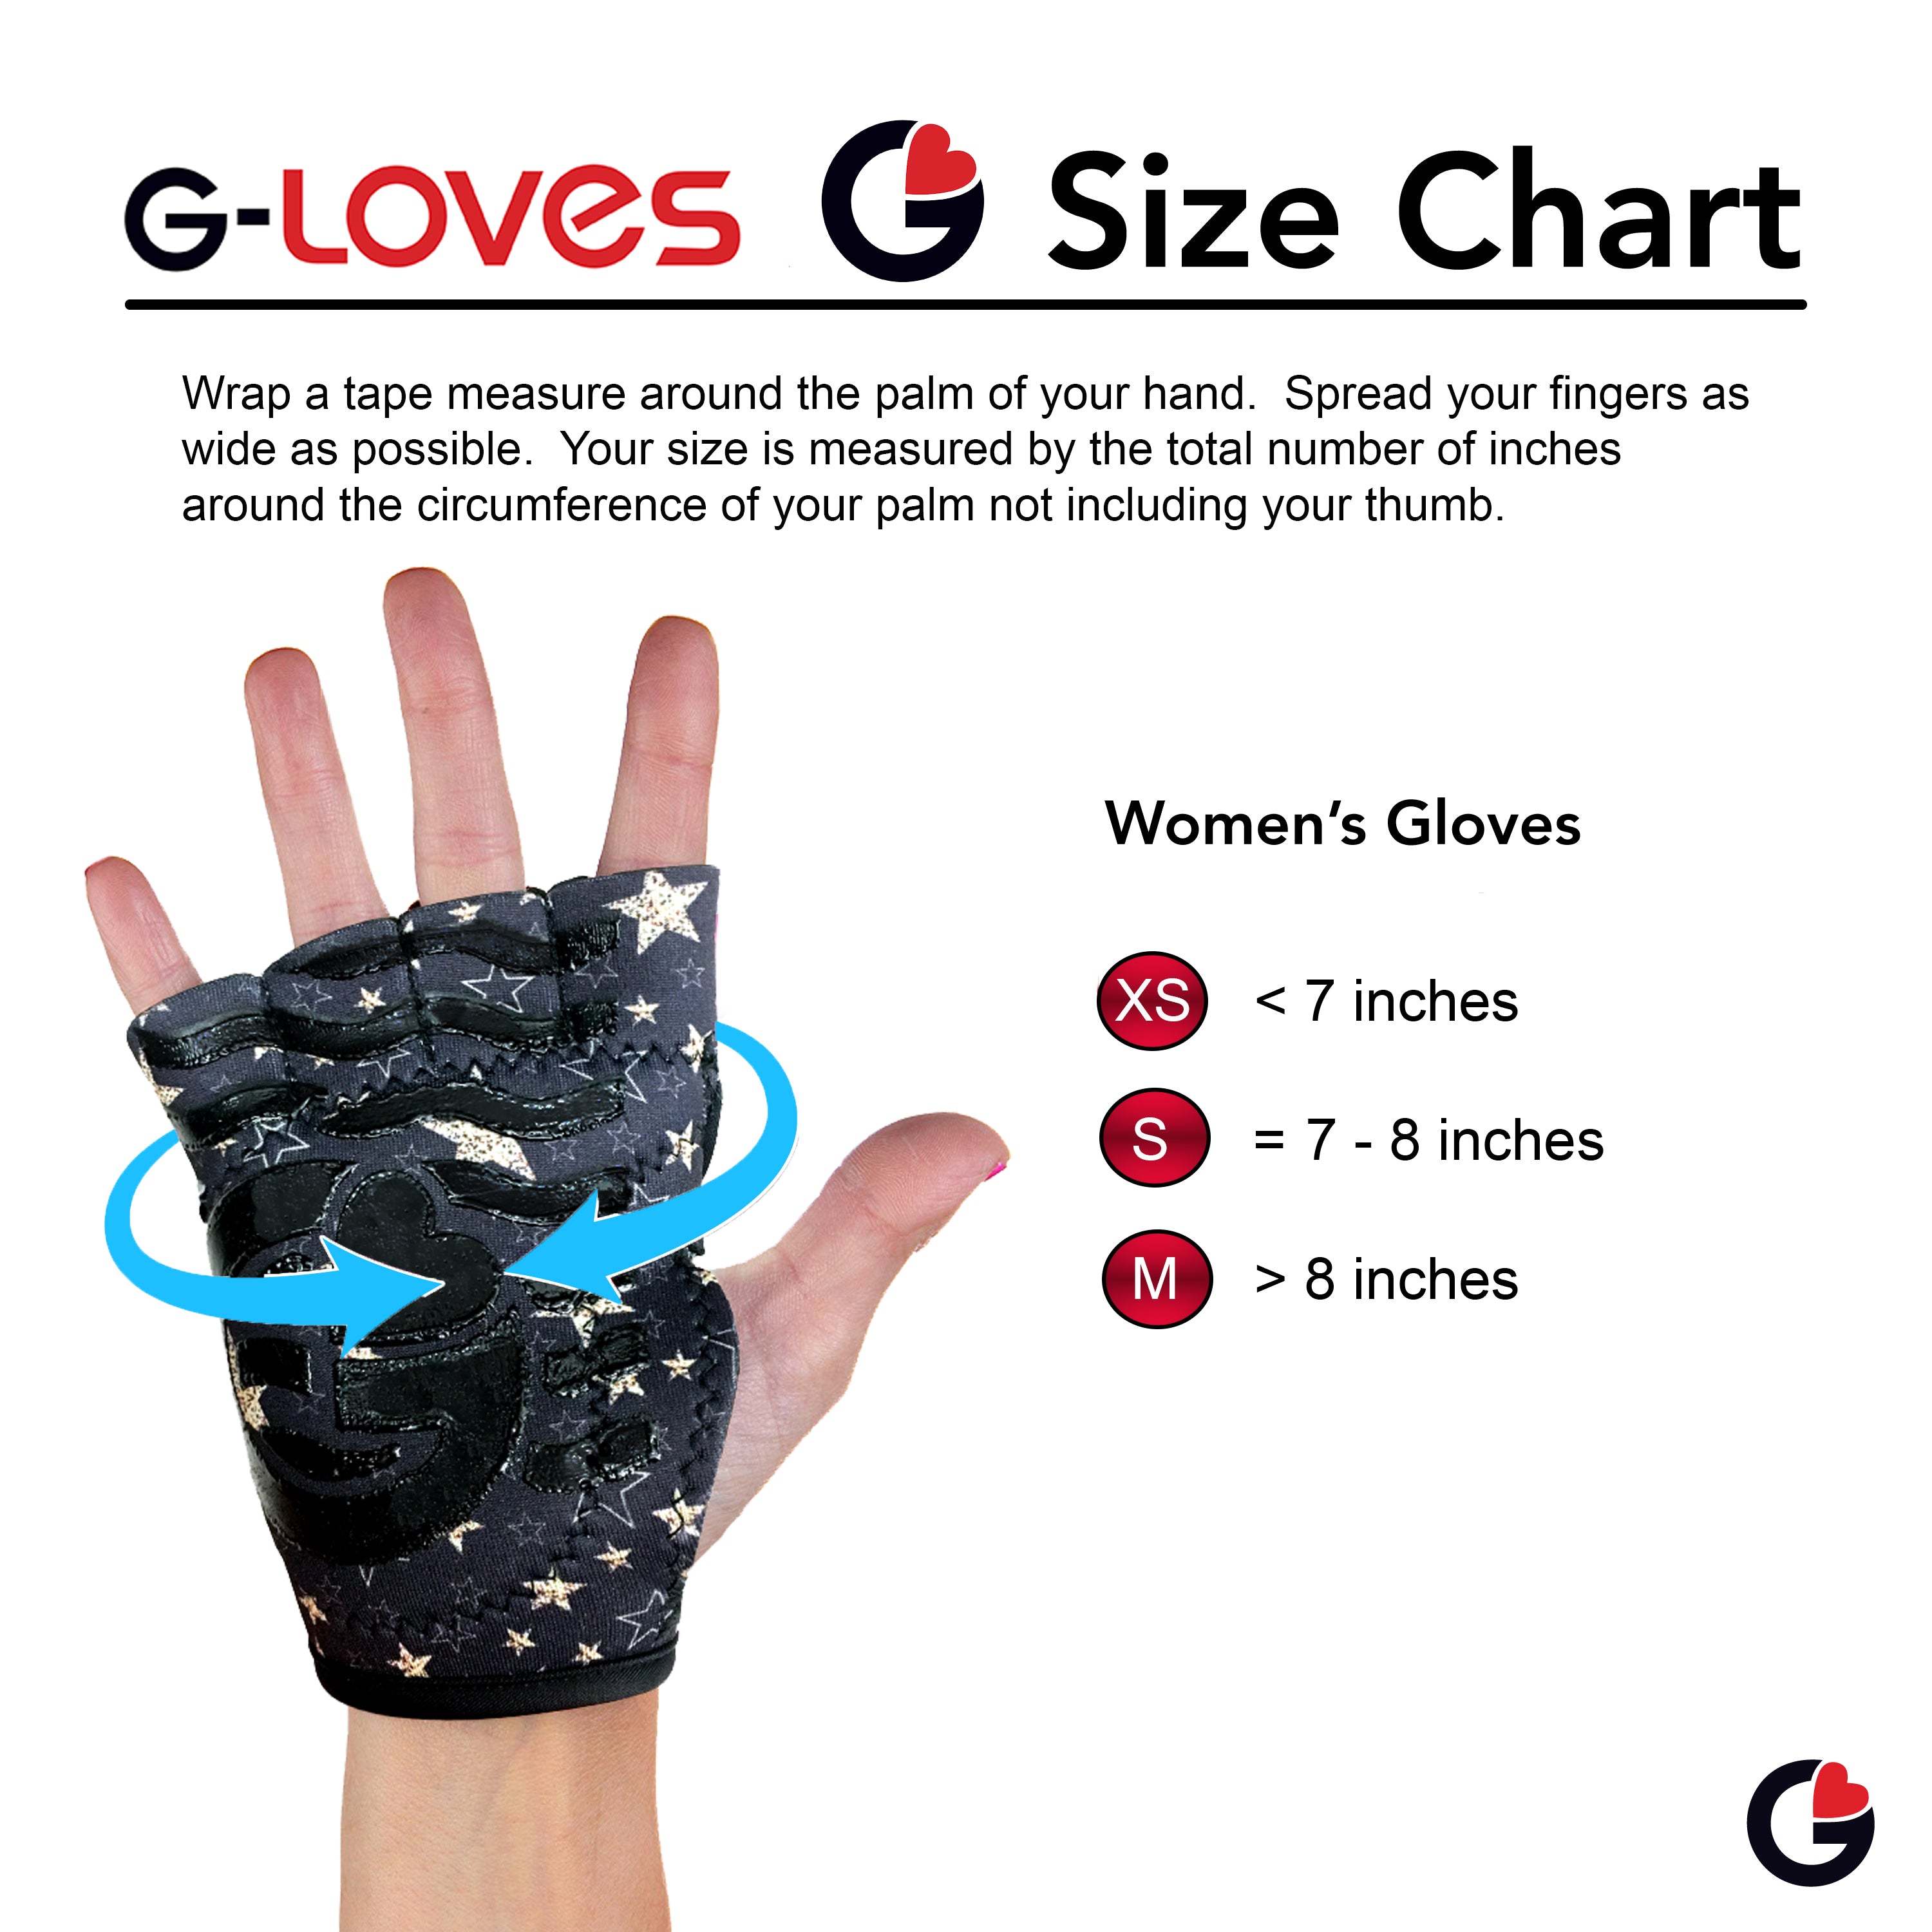 Women's Exercise Gloves | Women's Yoga Gloves | G-Loves